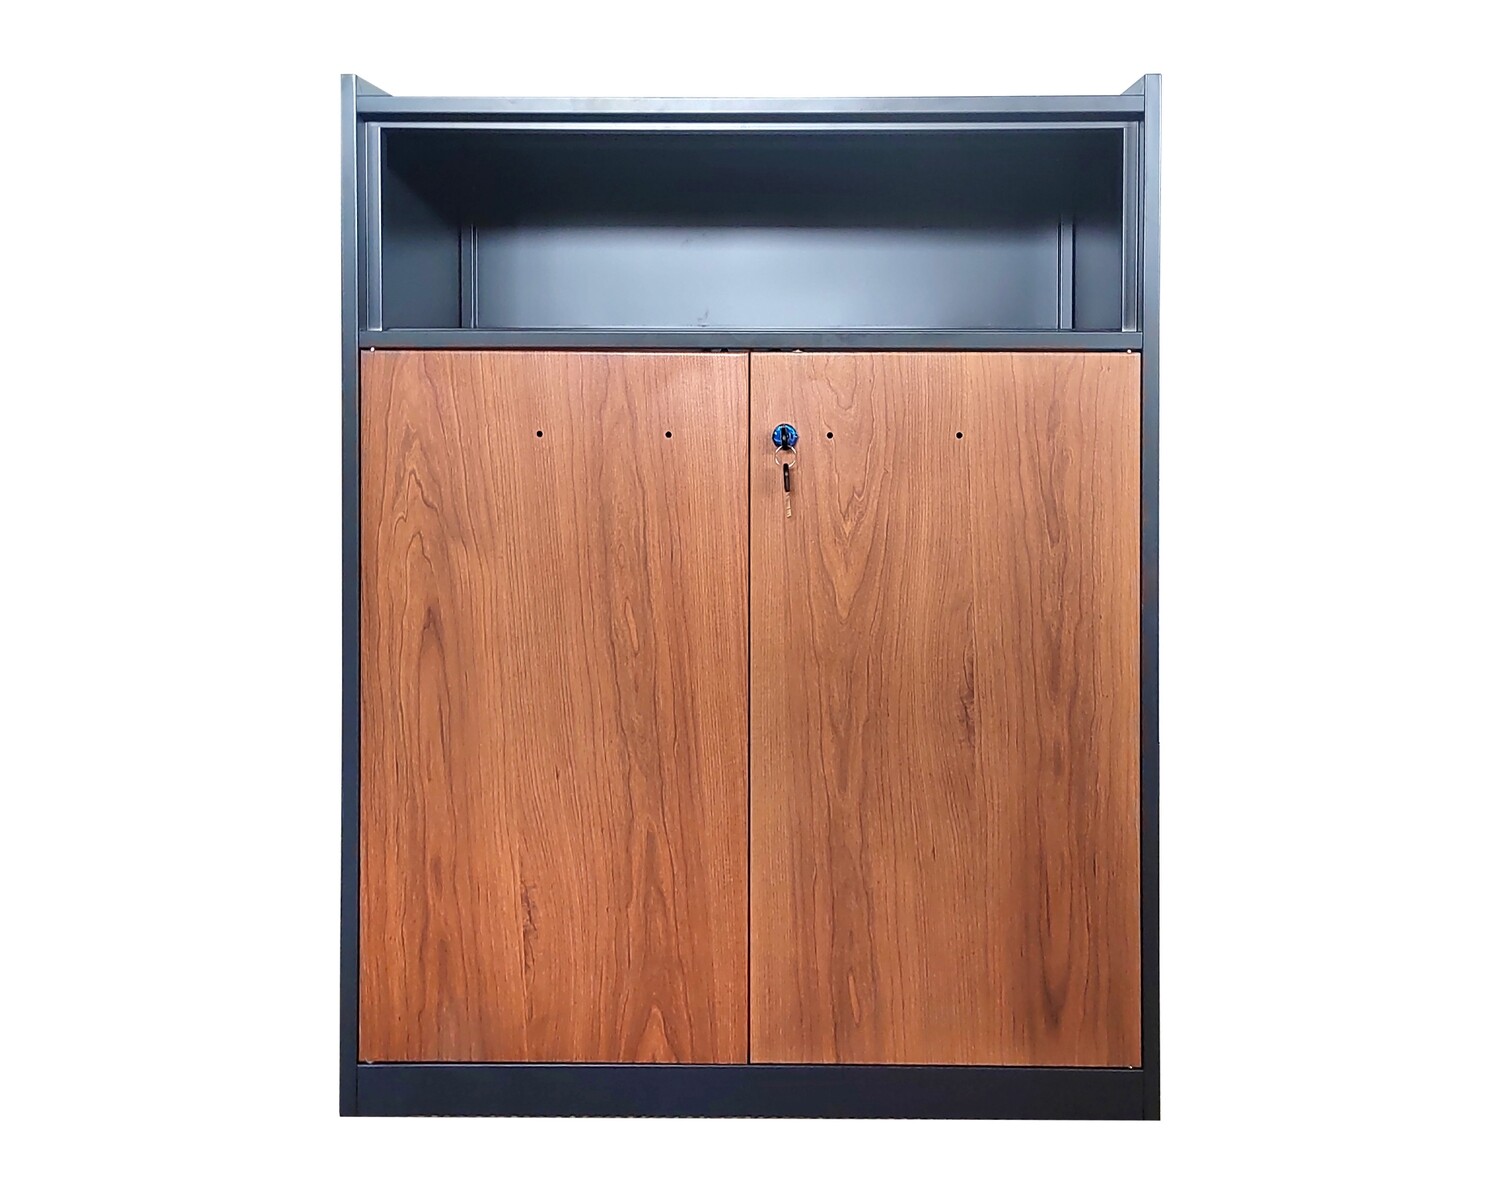 Ofix 2-Layer Swing & Open Shelf Steel Cabinet (Walnut)